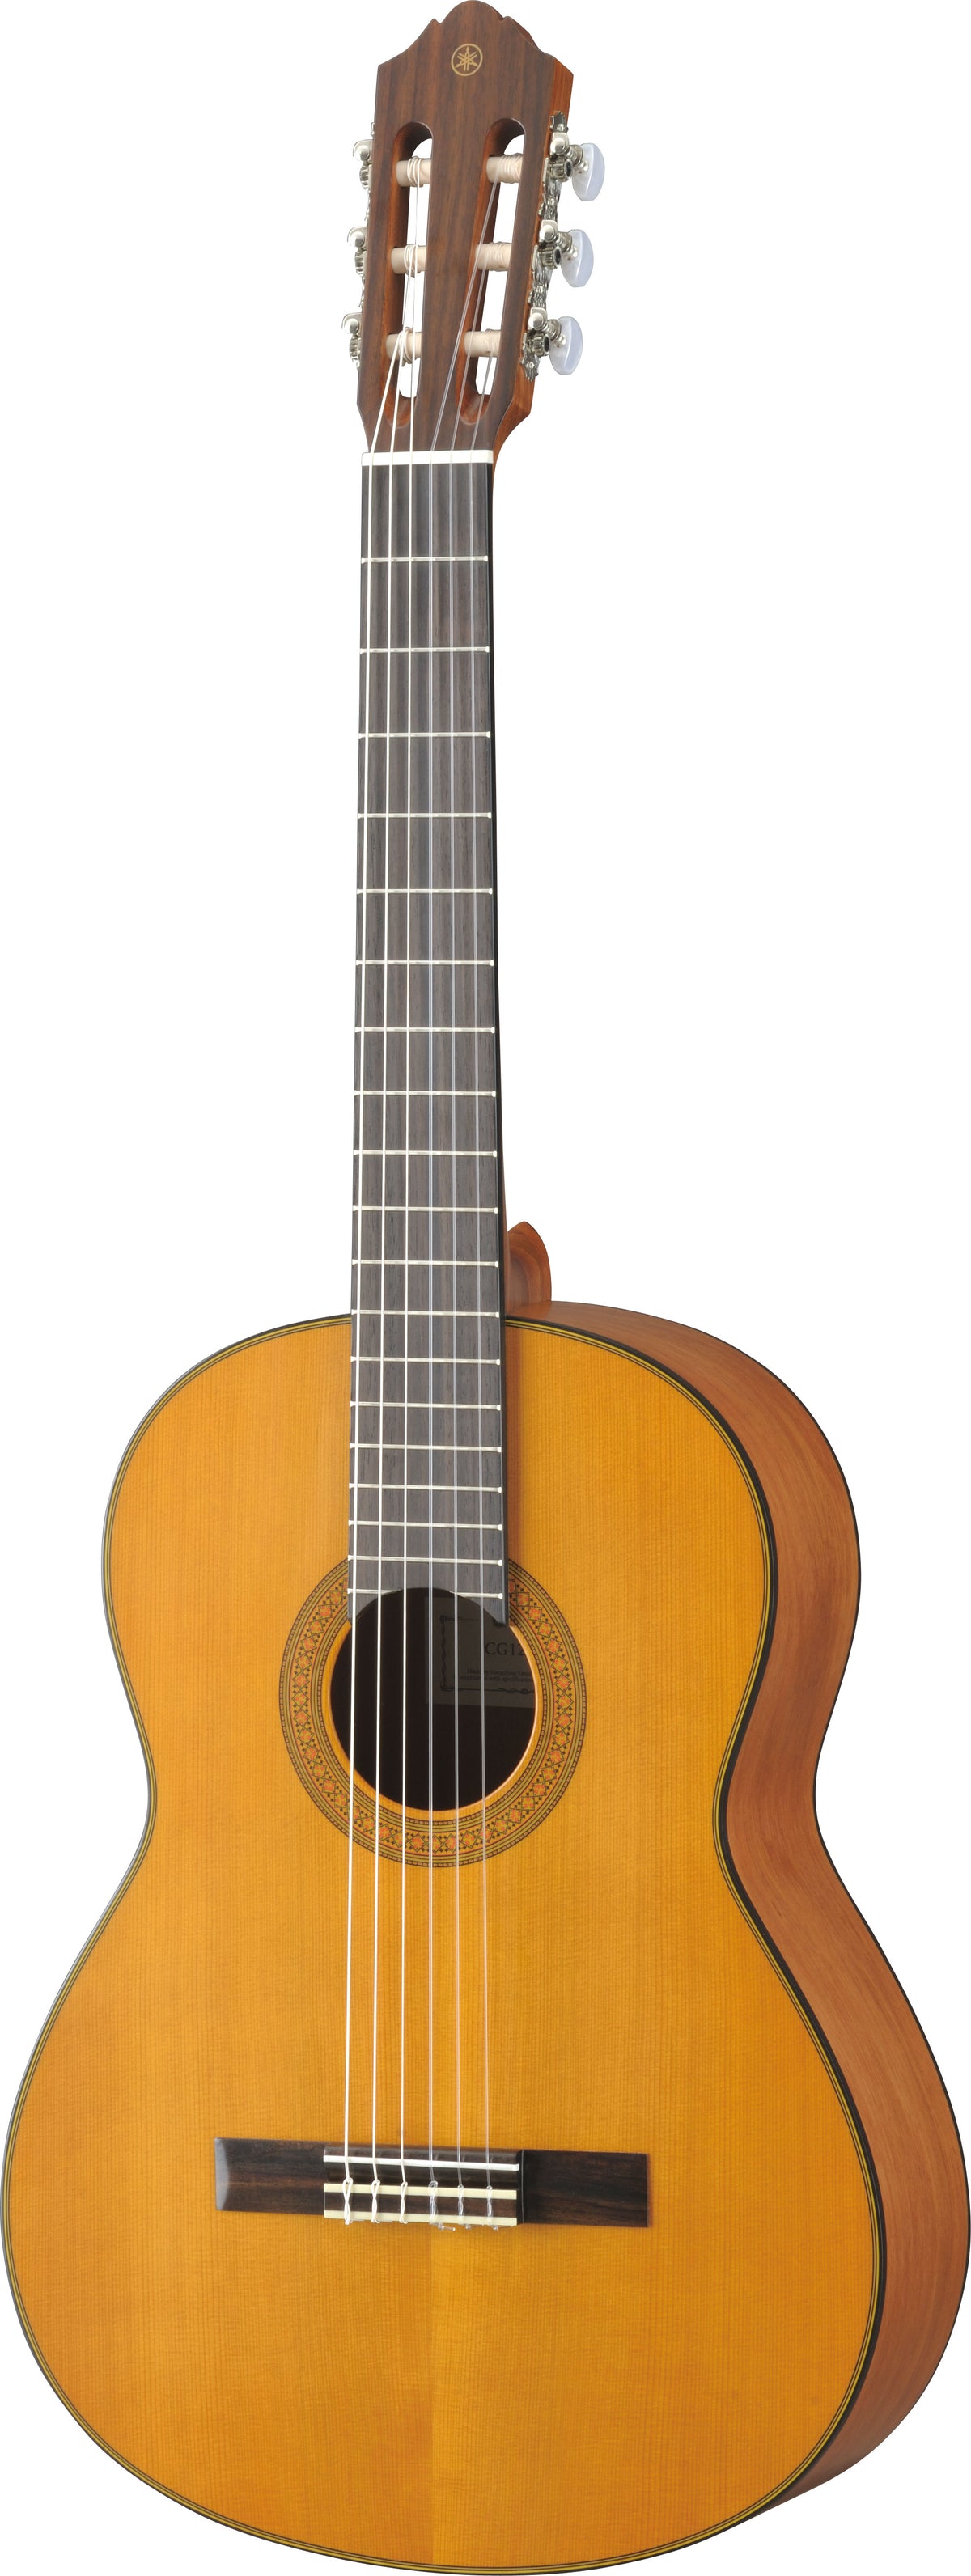 Yamaha CG142C Classical Guitar